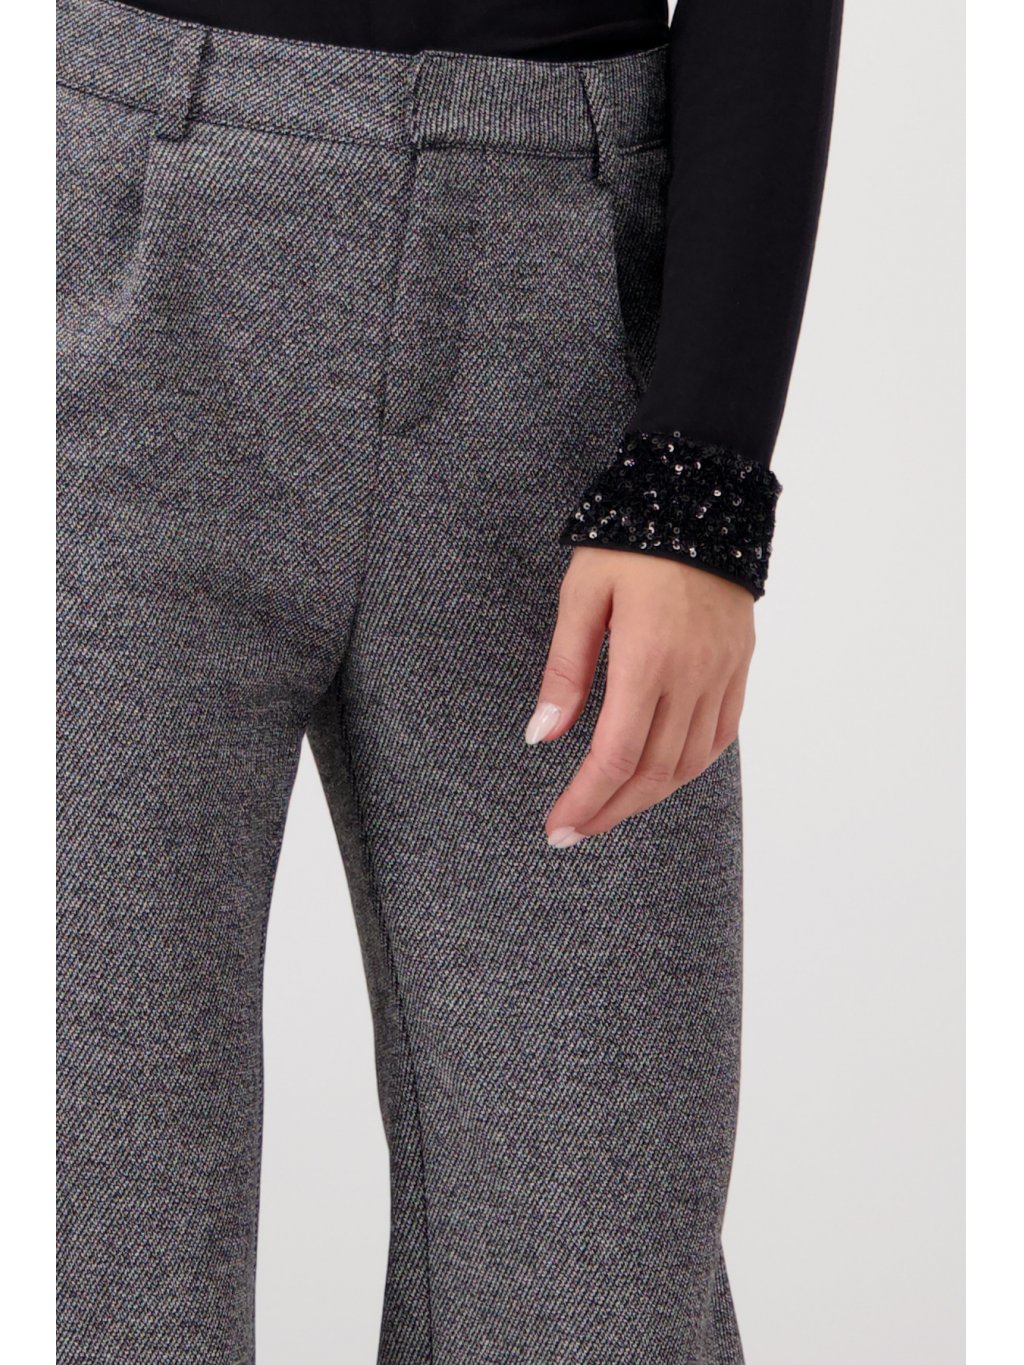 Kalhoty Monari 6096 šedé trendy melírované